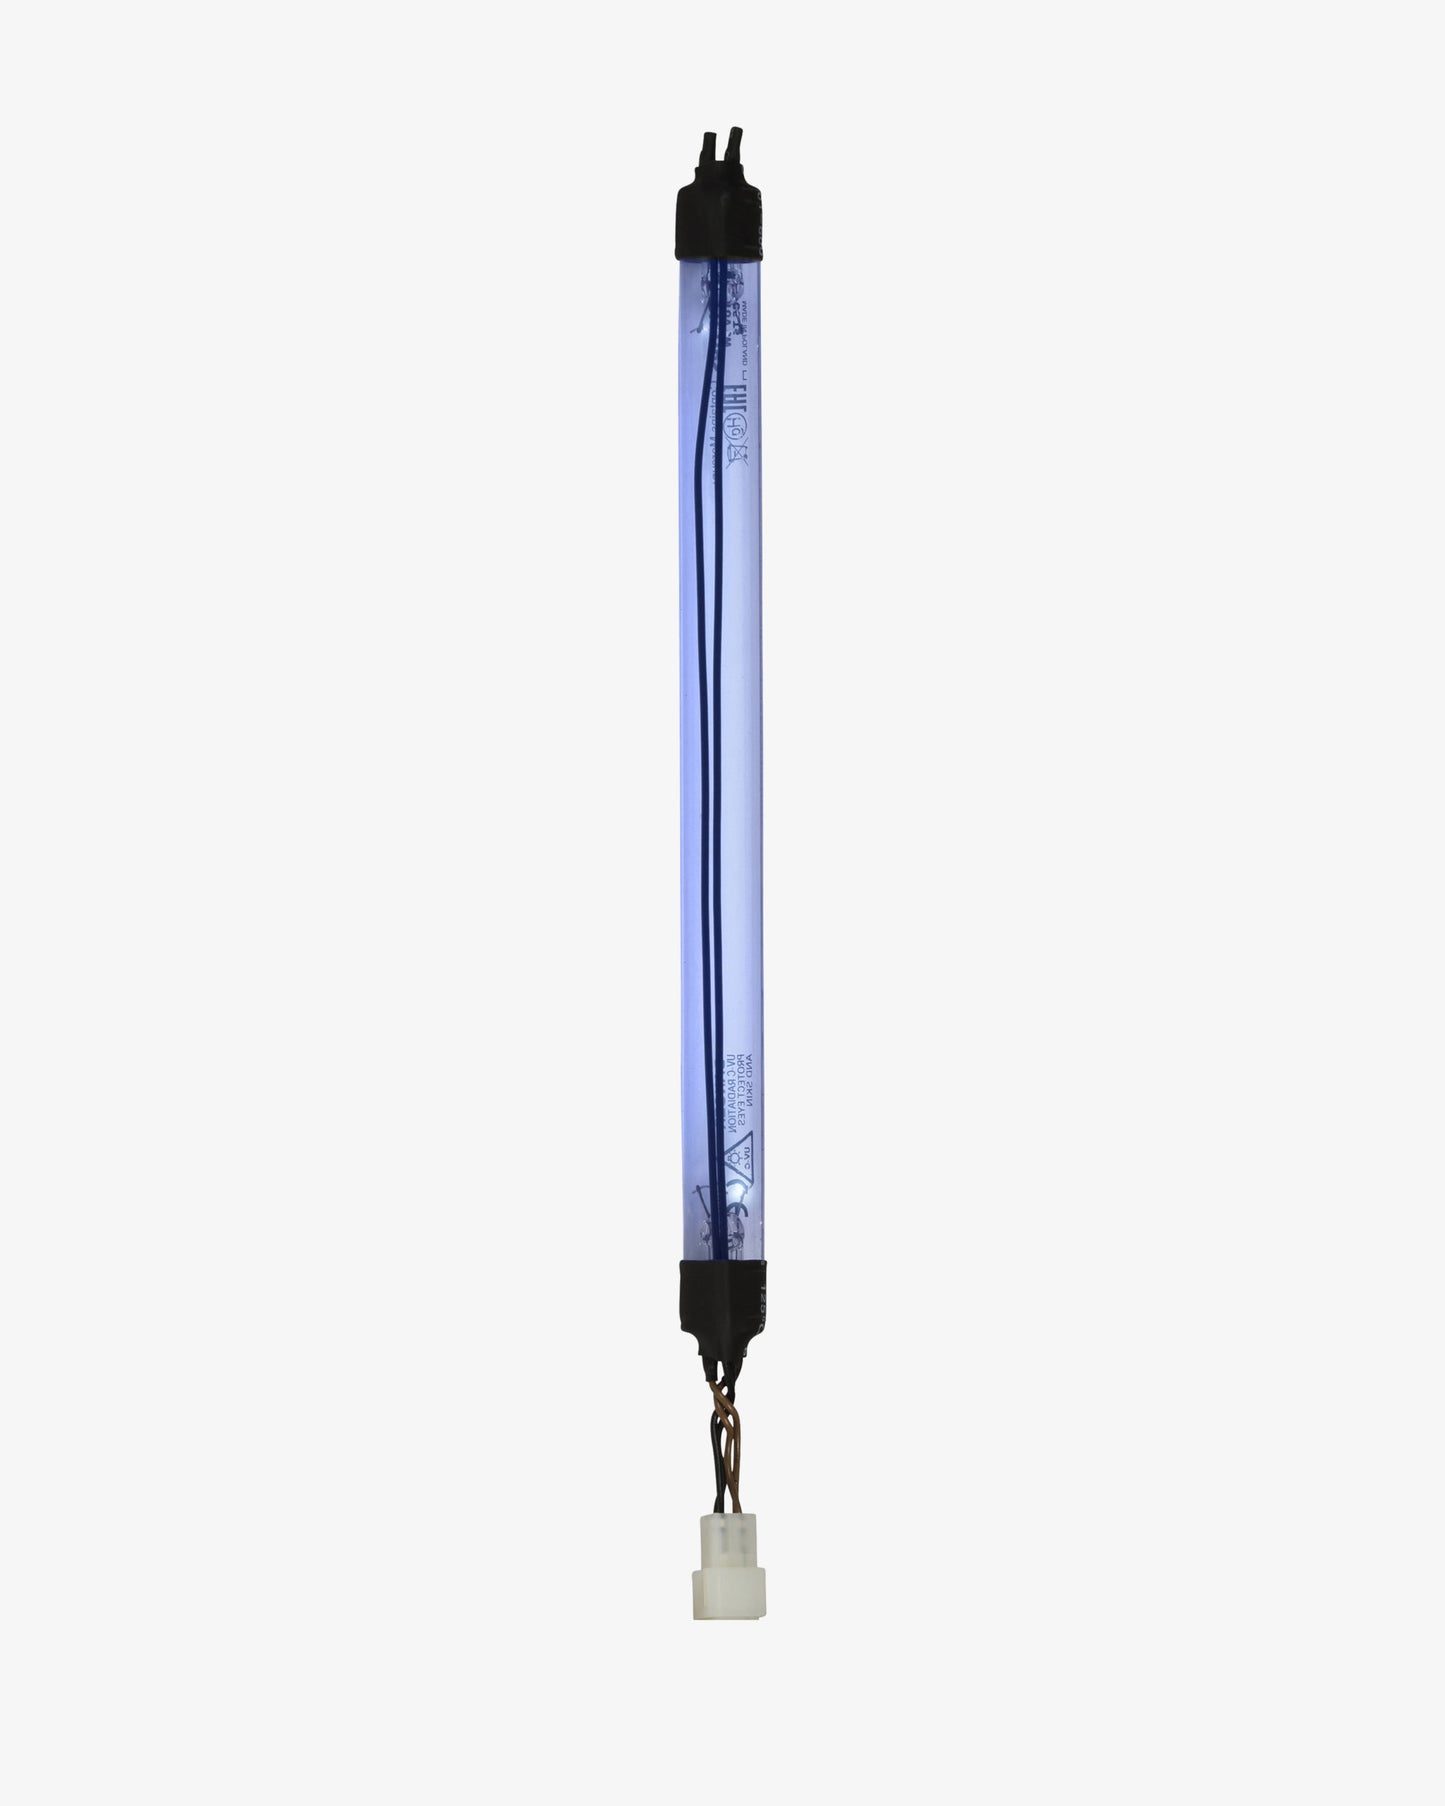 Water2Buy 25 W UV-Glühbirne – Ersatzbirne für UV-Wasserfilter